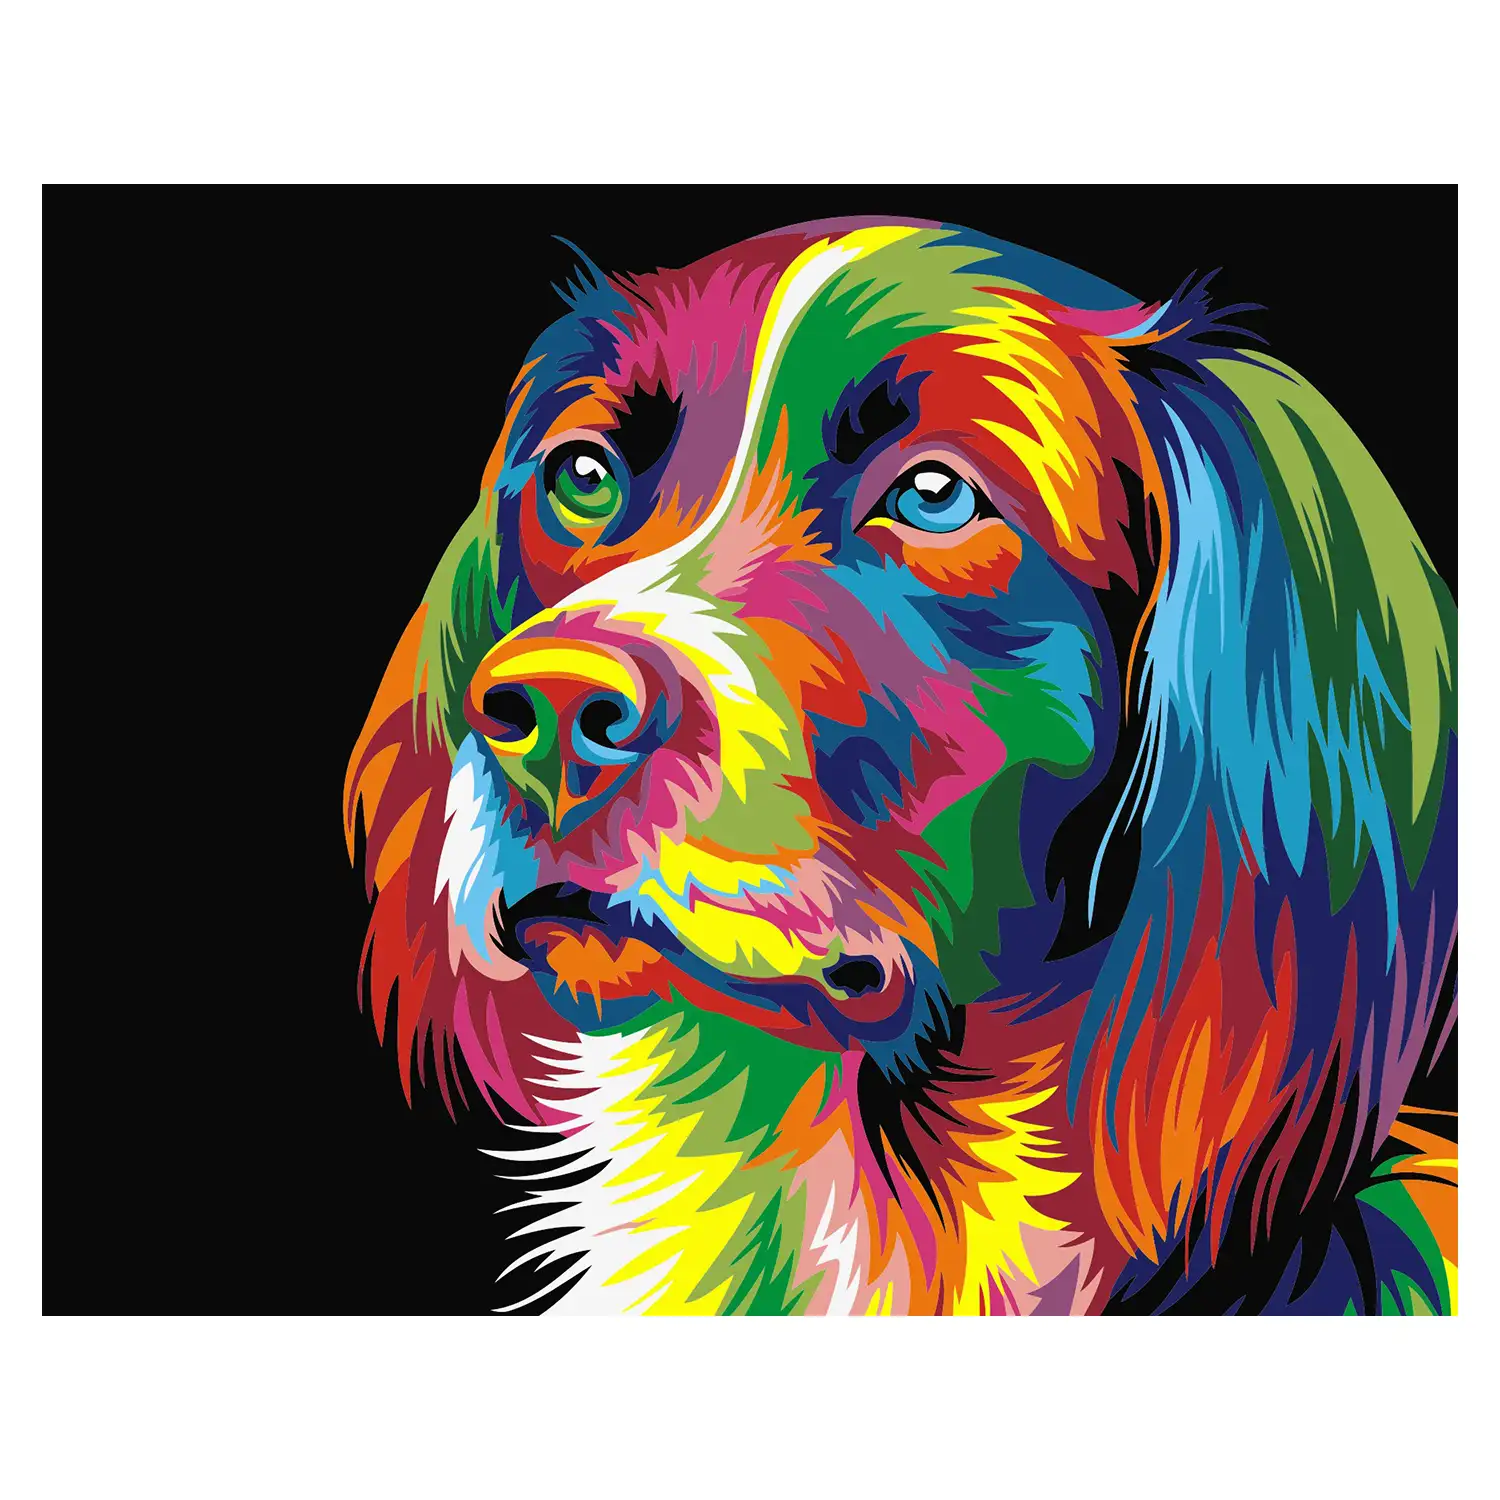 Lienzo con dibujo para pintar con números, de 40x50cm. Diseño perro multicolor. Incluye pinceles y pinturas necesarias.